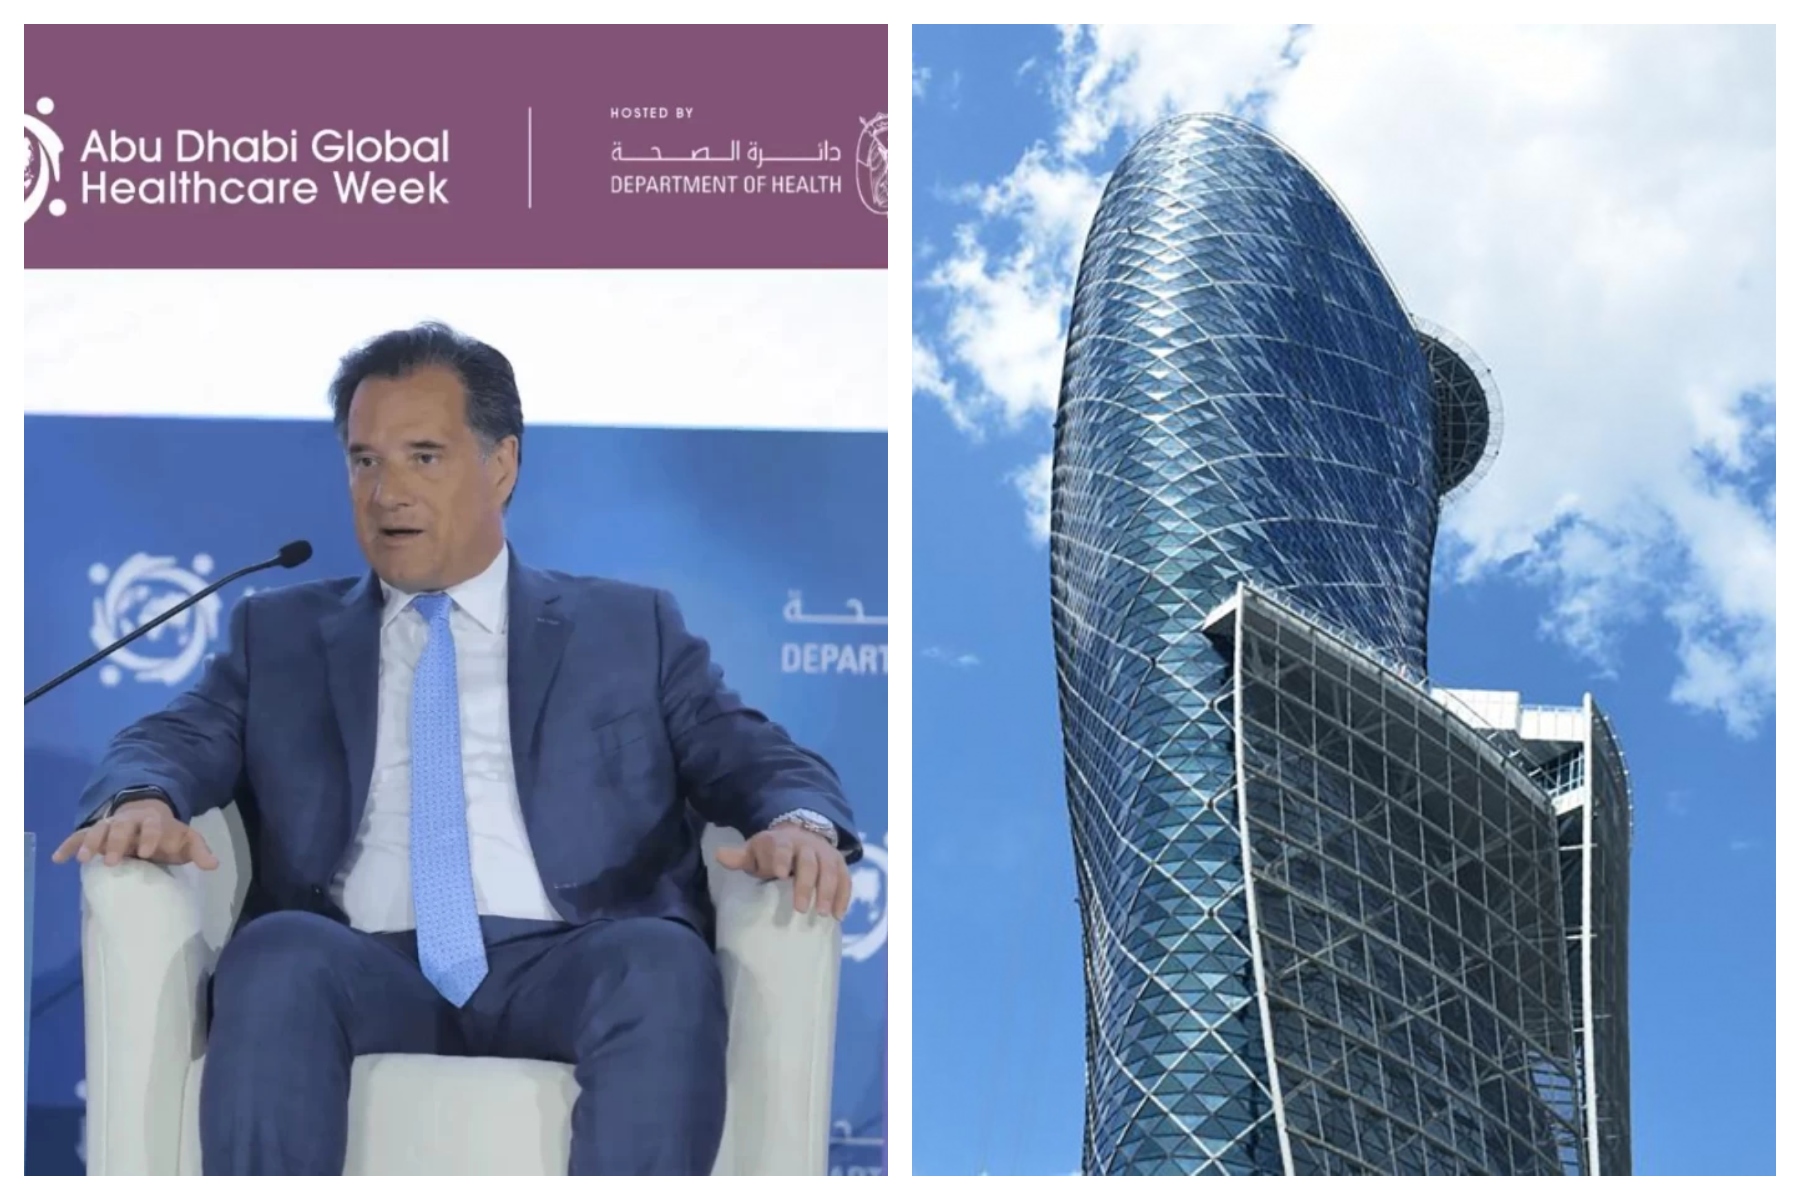 Ο Άδωνις Γεωργιάδης συμμετείχε στο Παγκόσμιο Συνέδριο για την Υγεία στο Abu Dhabi